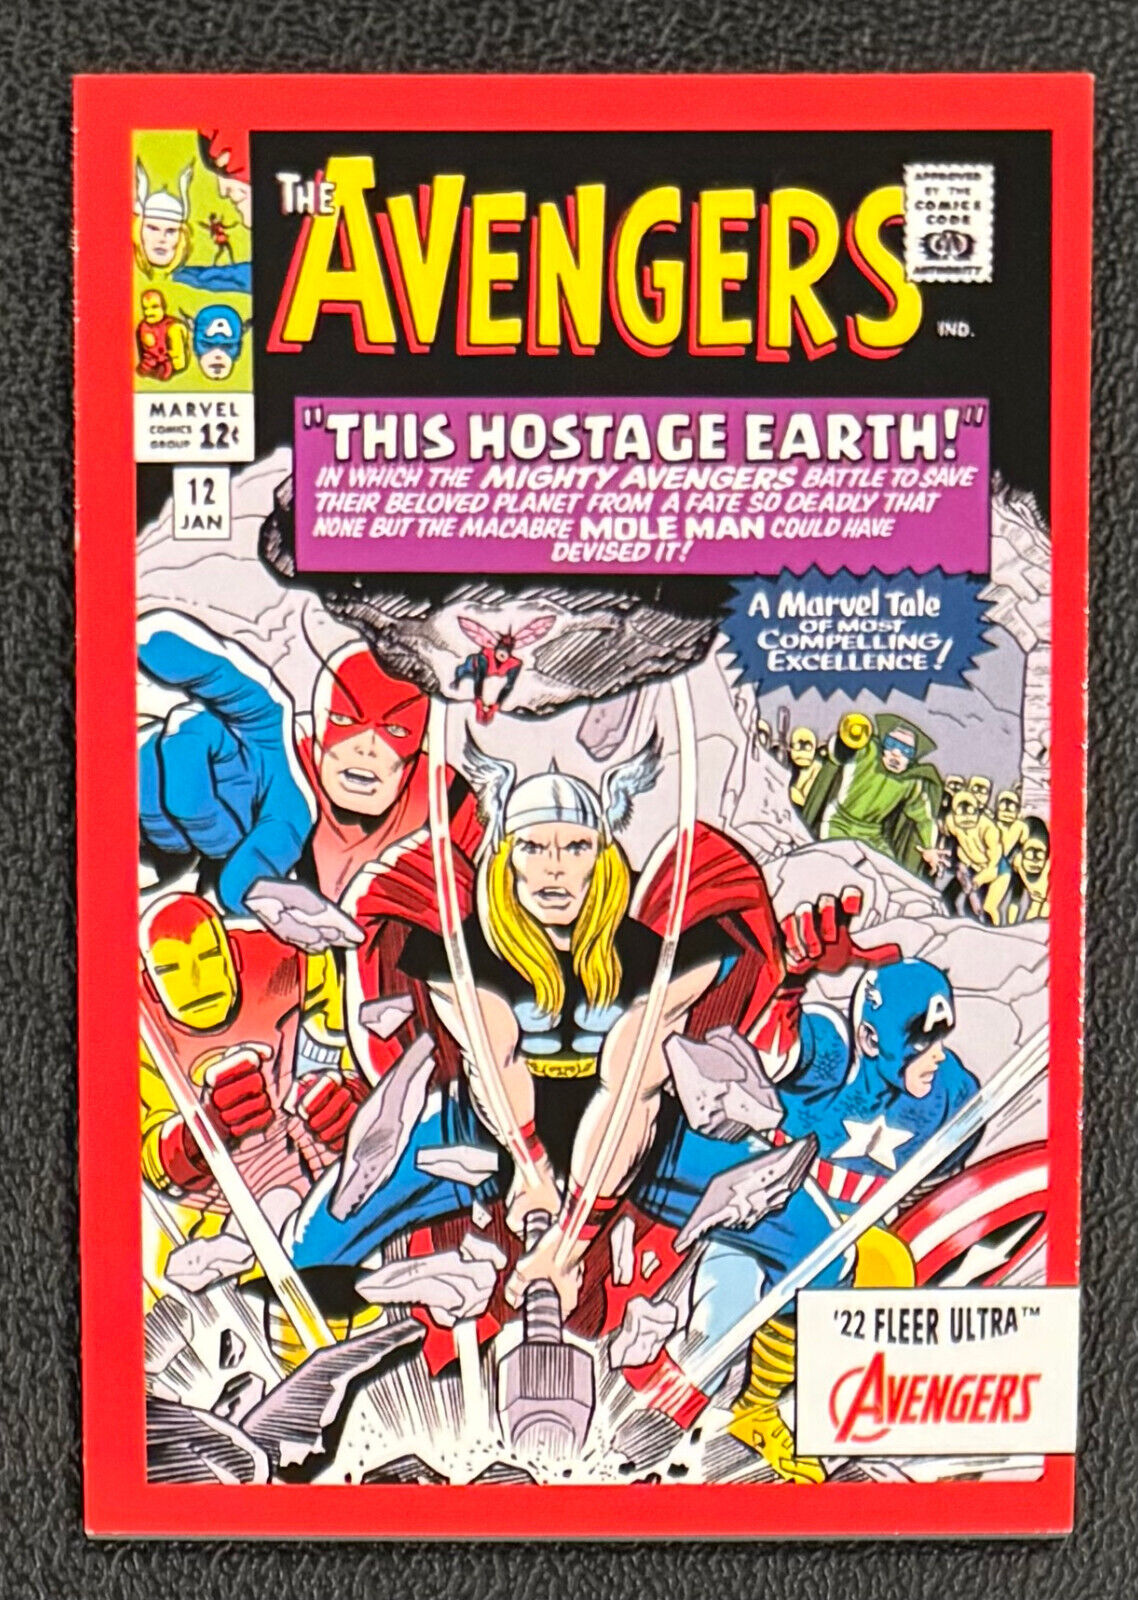 2022 Fleer Ultra Avengers COMIC COVERS Insert #A-12 1963 AVENGERS 12, #11/12 SSP